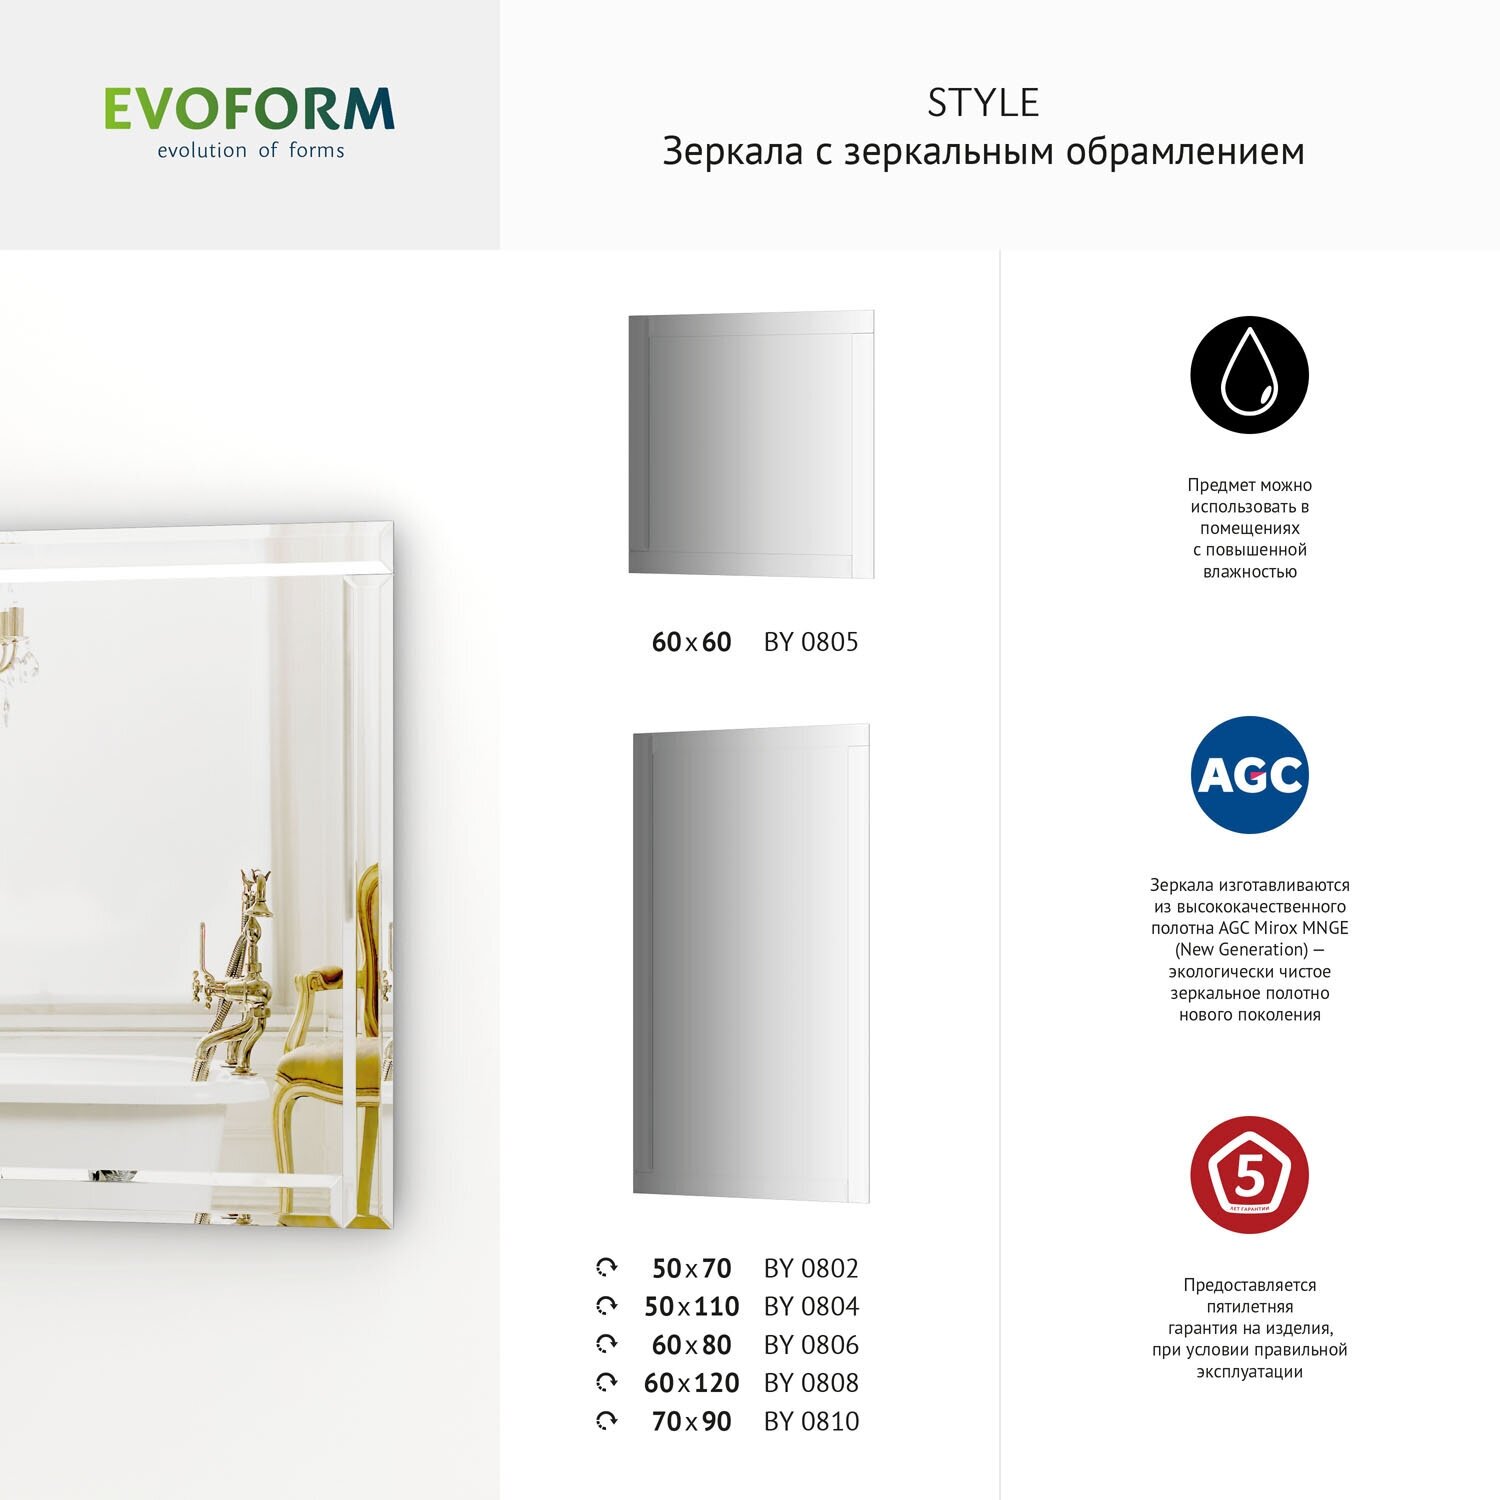 Зеркало настенное Квадратное c зеркальным обрамлением Style EVOFORM 60х60 см, для гостиной, прихожей, спальни, кабинета и ванной комнаты, BY 0805 - фотография № 10